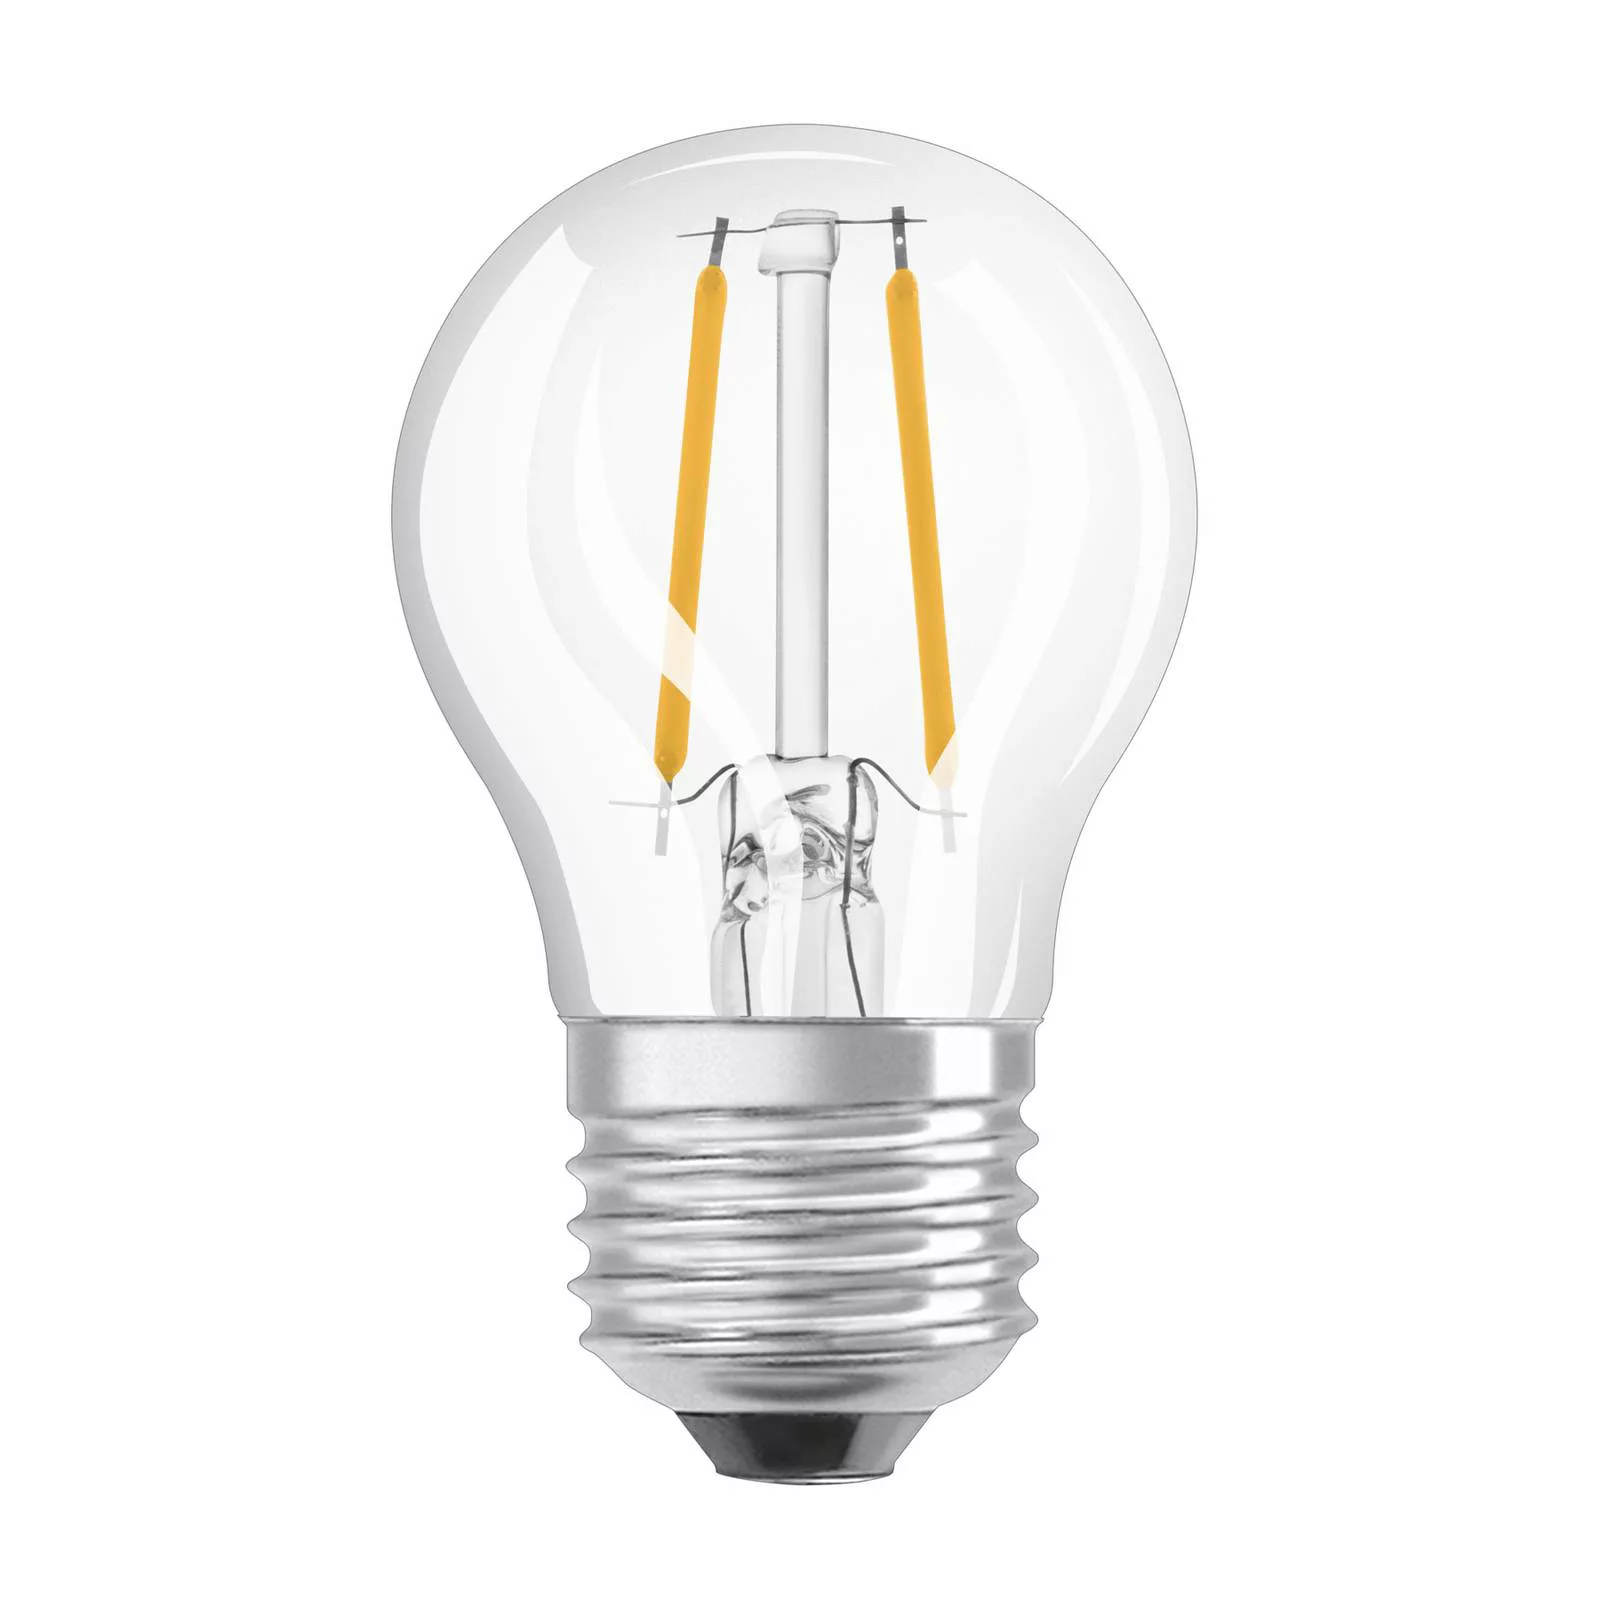 Osram LED-Leuchtmittel E27 Tropfenform 2,5 W 250 lm 7,7 x 4,5 cm (H x Ø) günstig online kaufen